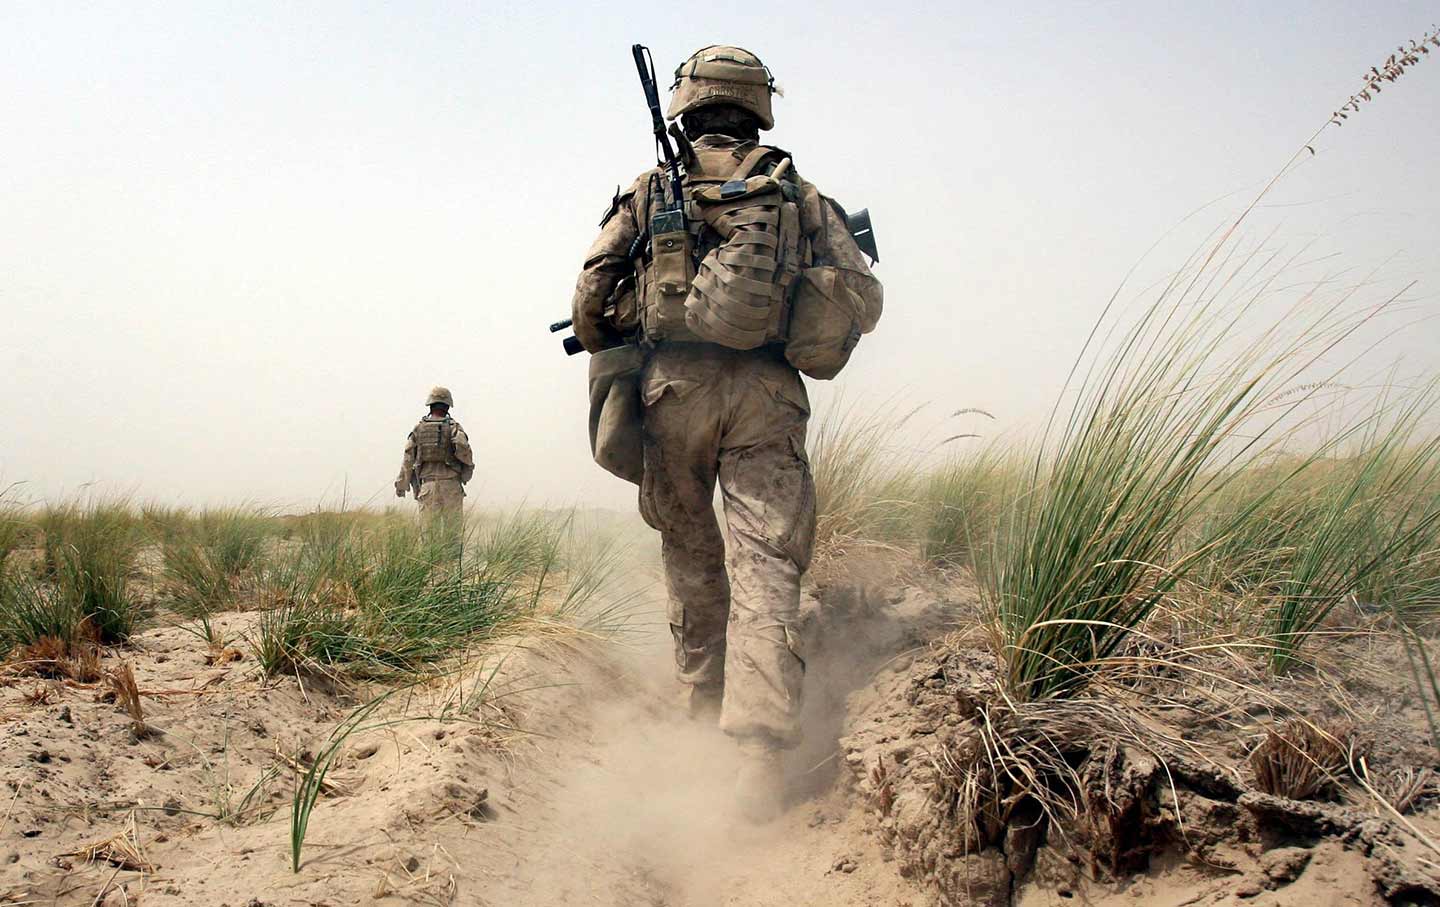 Marines on patrol in Afghanistan